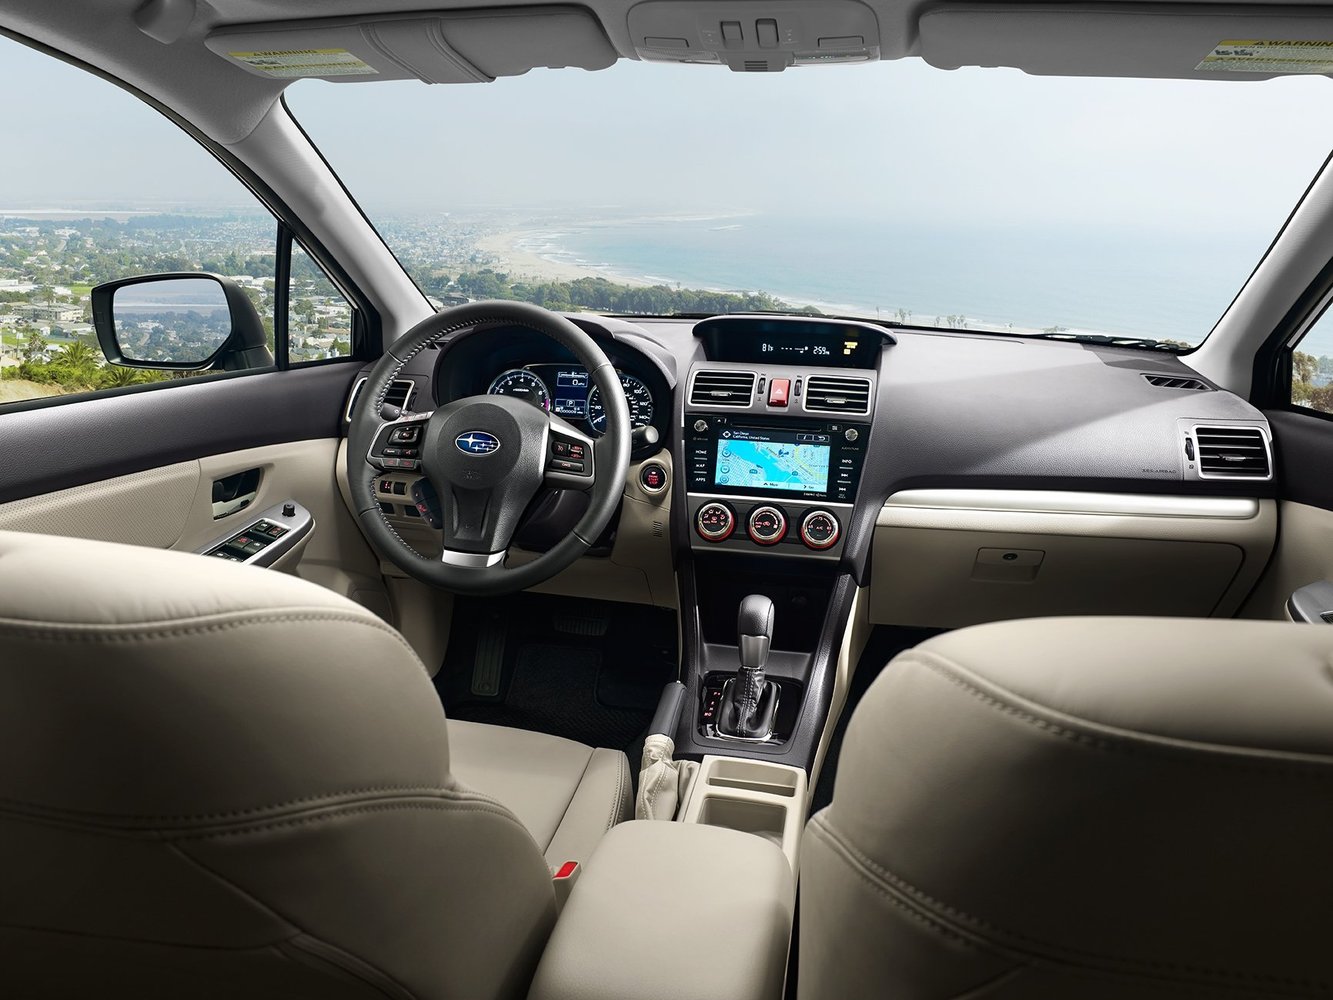 хэтчбек 5 дв. Subaru Impreza 2015 - 2016г выпуска модификация 1.6 CVT (114 л.с.)